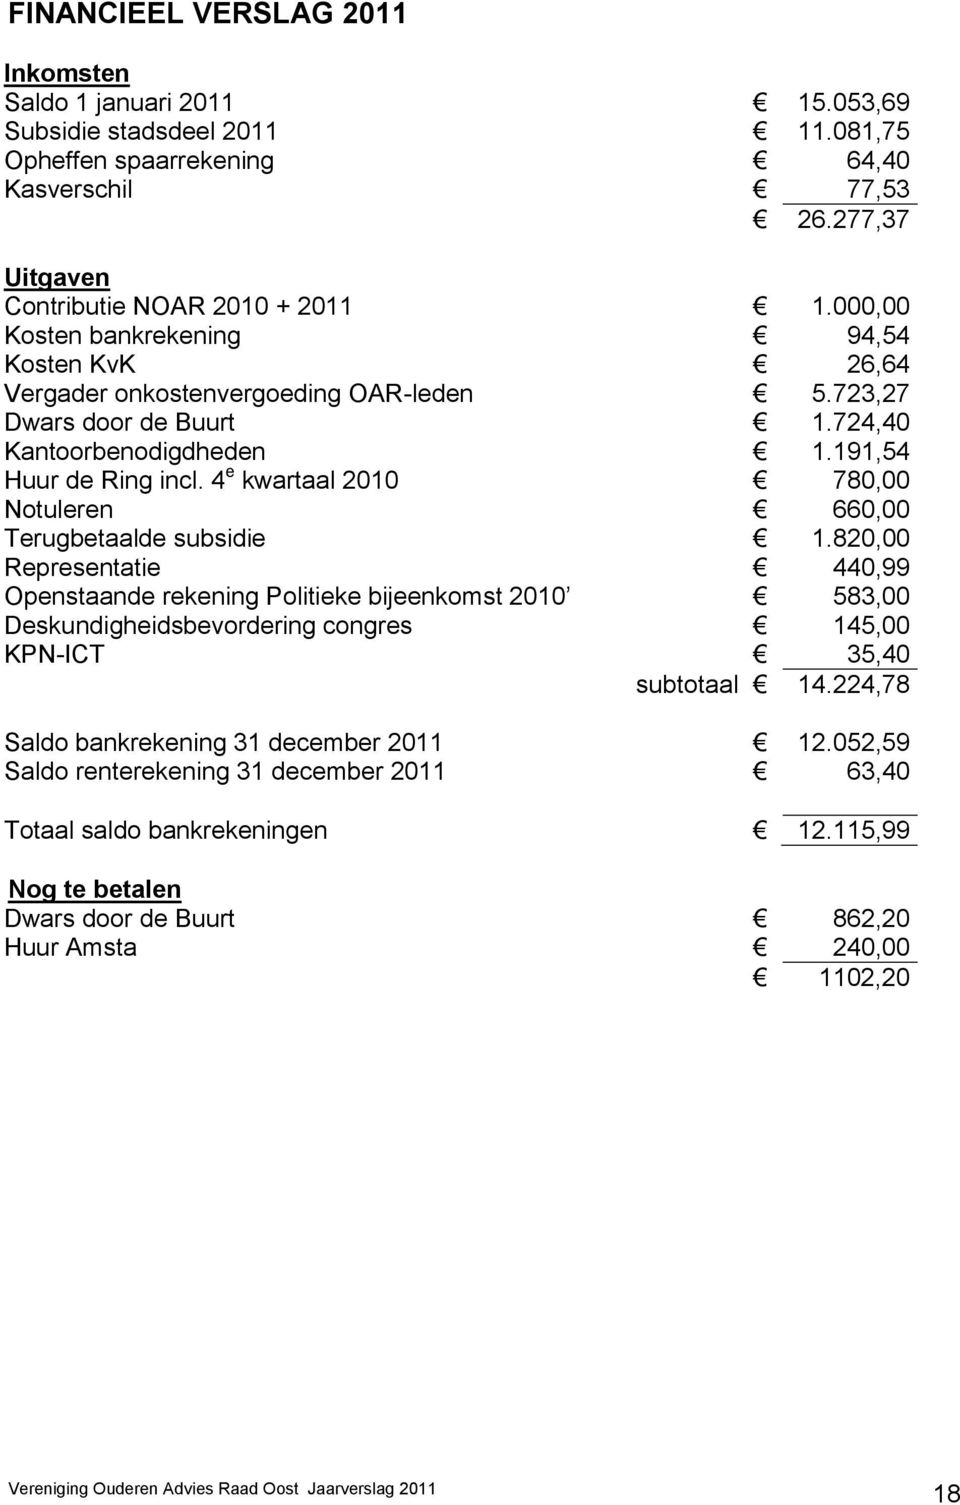 4 e kwartaal 2010 780,00 Notuleren 660,00 Terugbetaalde subsidie 1.